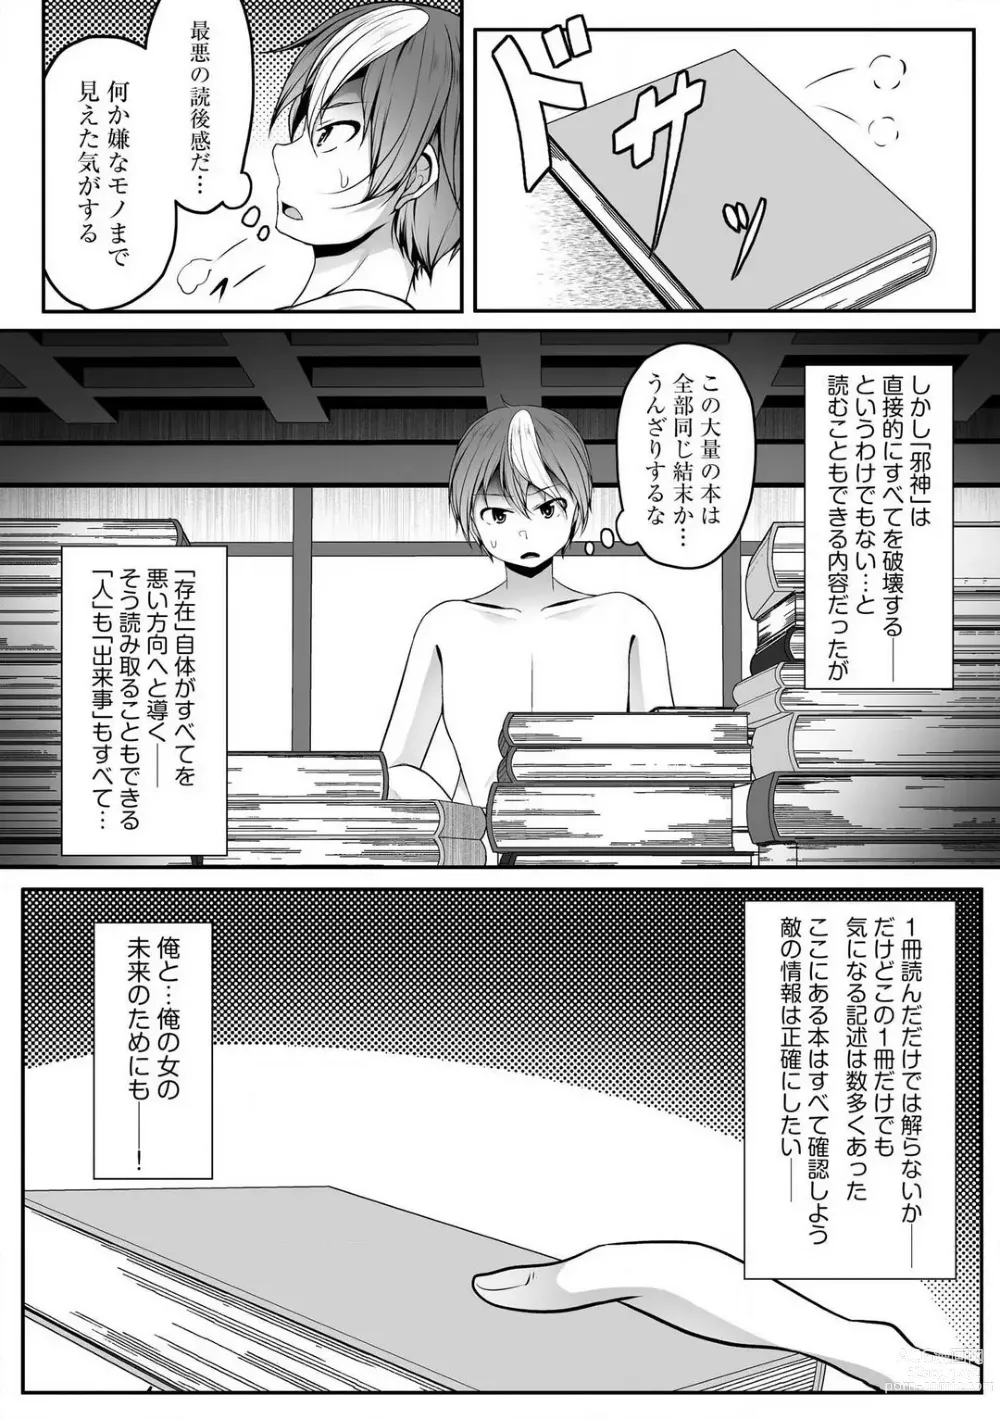 Page 342 of manga Cheat Skill Shihai